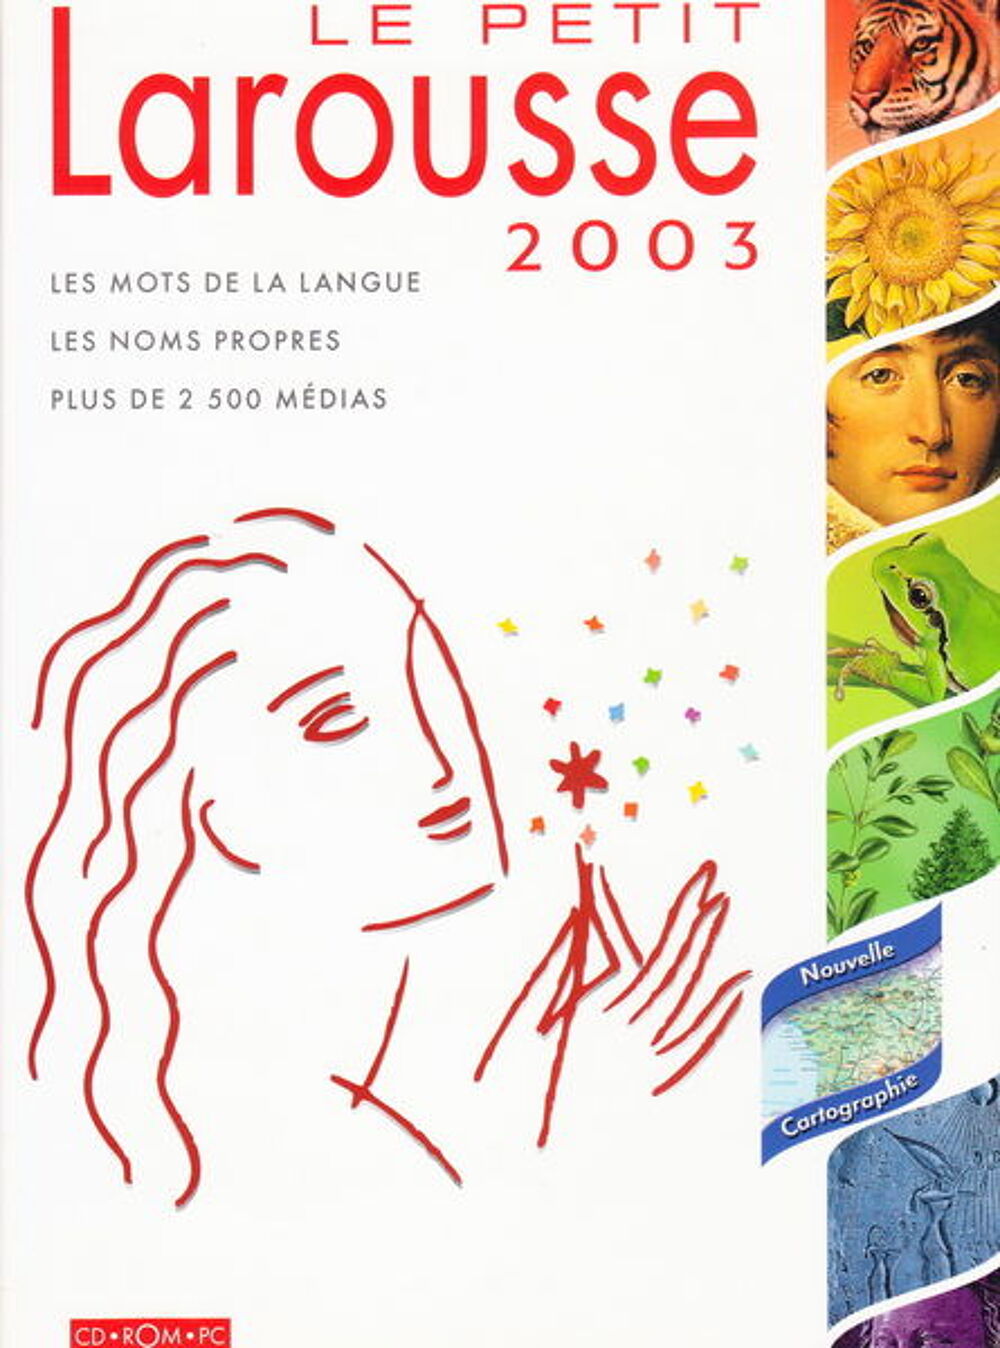 CD PC Le Petit Larousse 2003
Matriel informatique